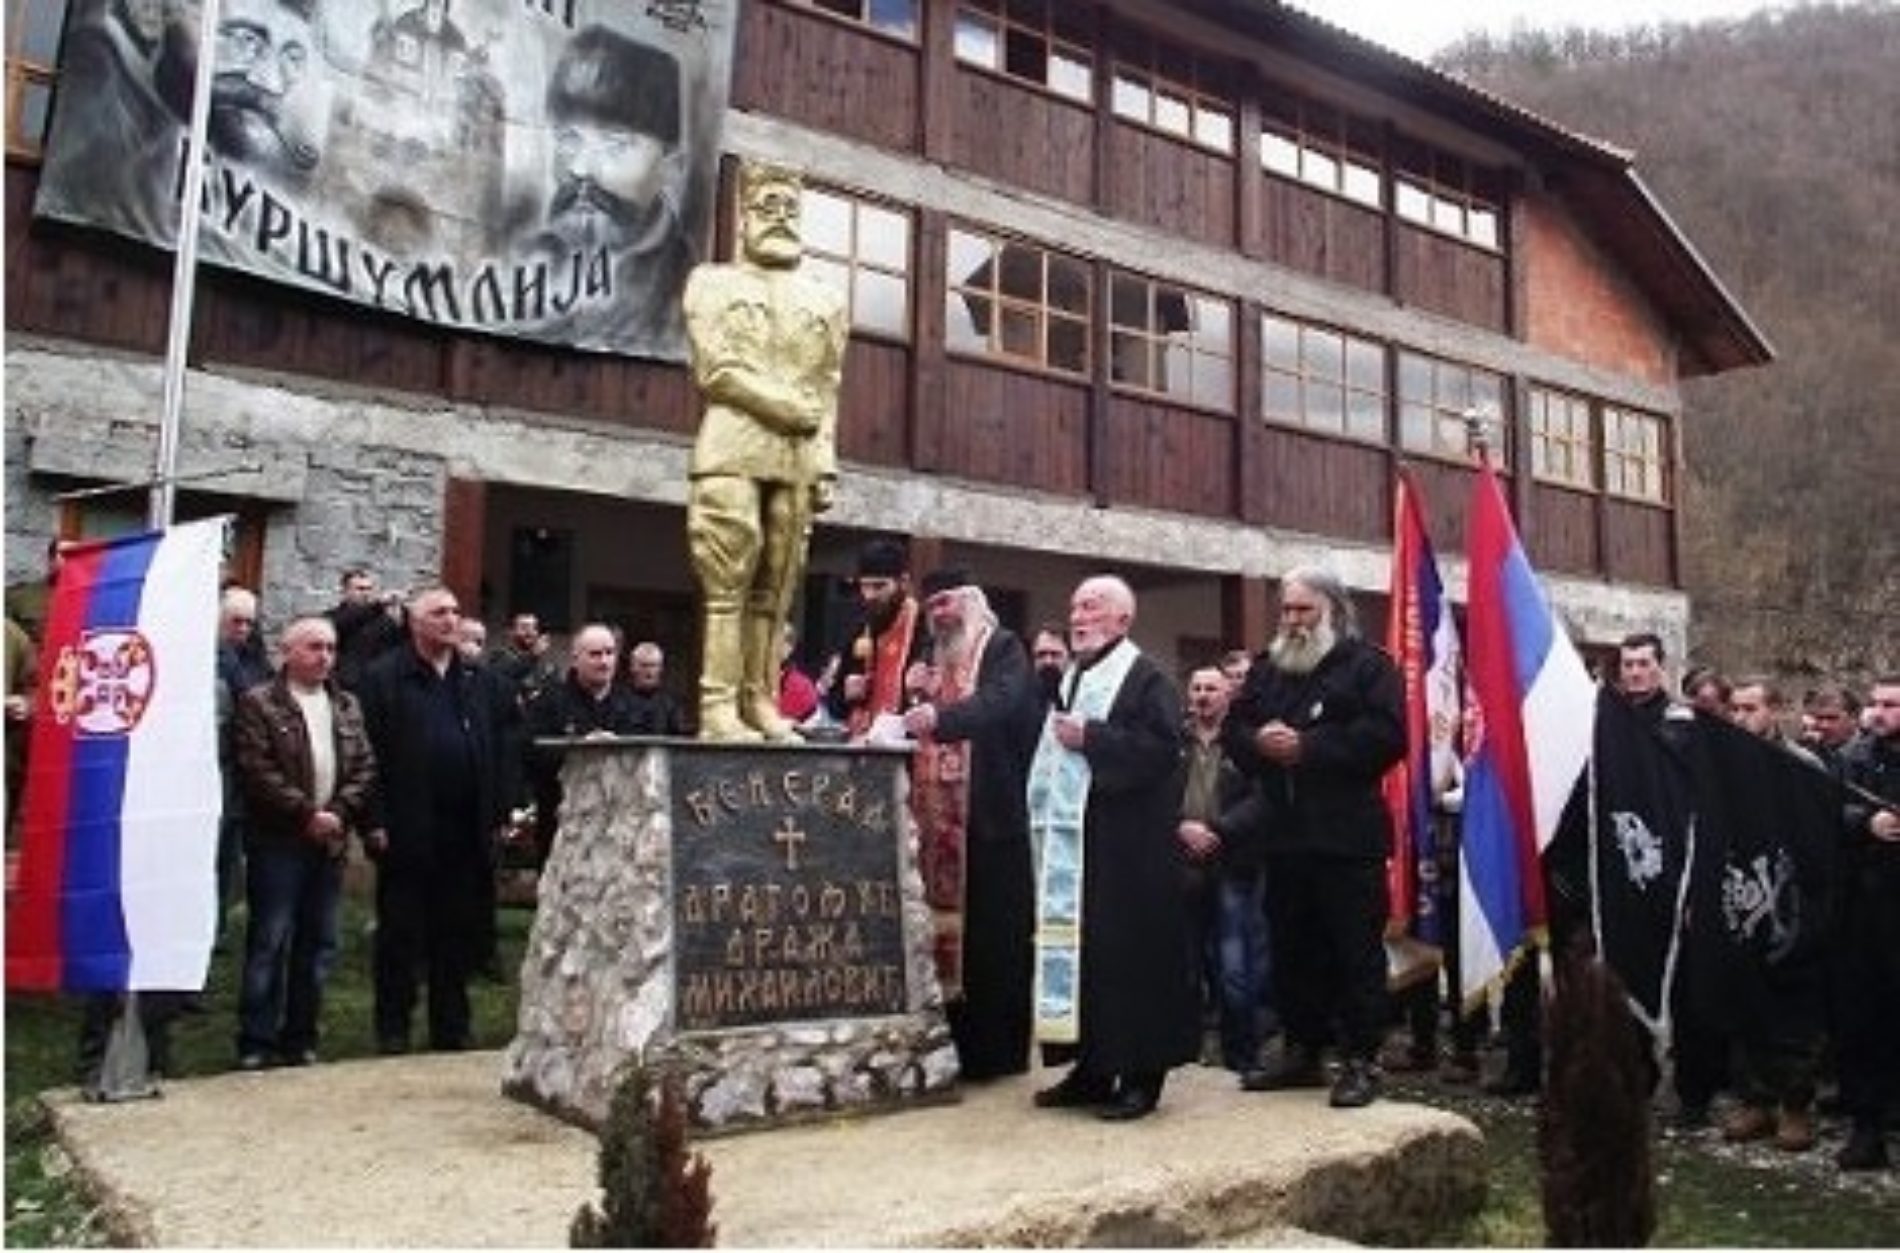 Crnogorci se distanciraju od srpskog fašizma: Stop za “Ravnogorski pokret Crne Gore”